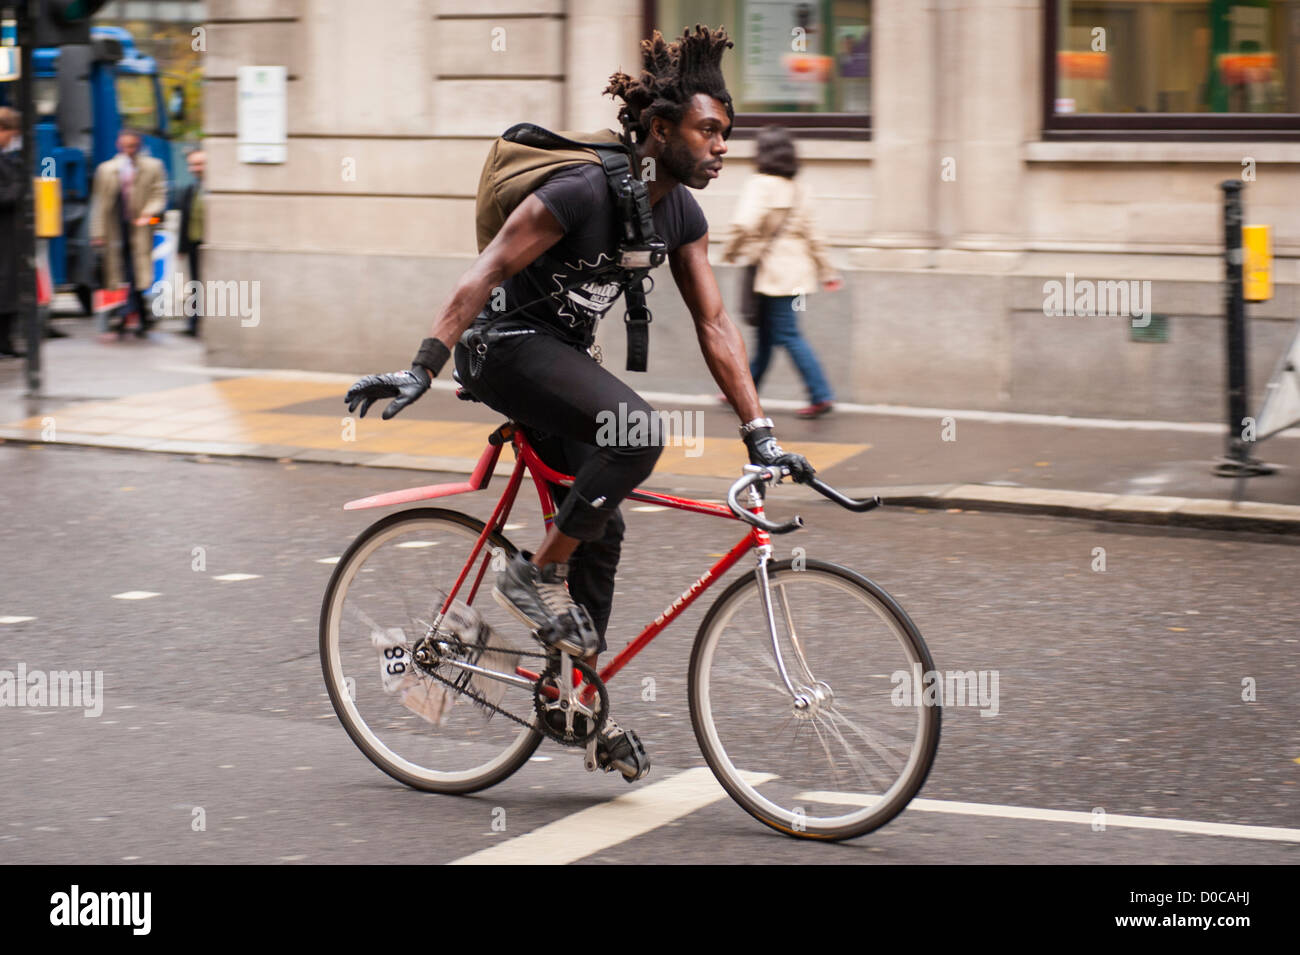 Londres , ville , homme noir garçon homme messenger sur vélo bicyclette cycle avec les cheveux afro hairstyle Banque D'Images